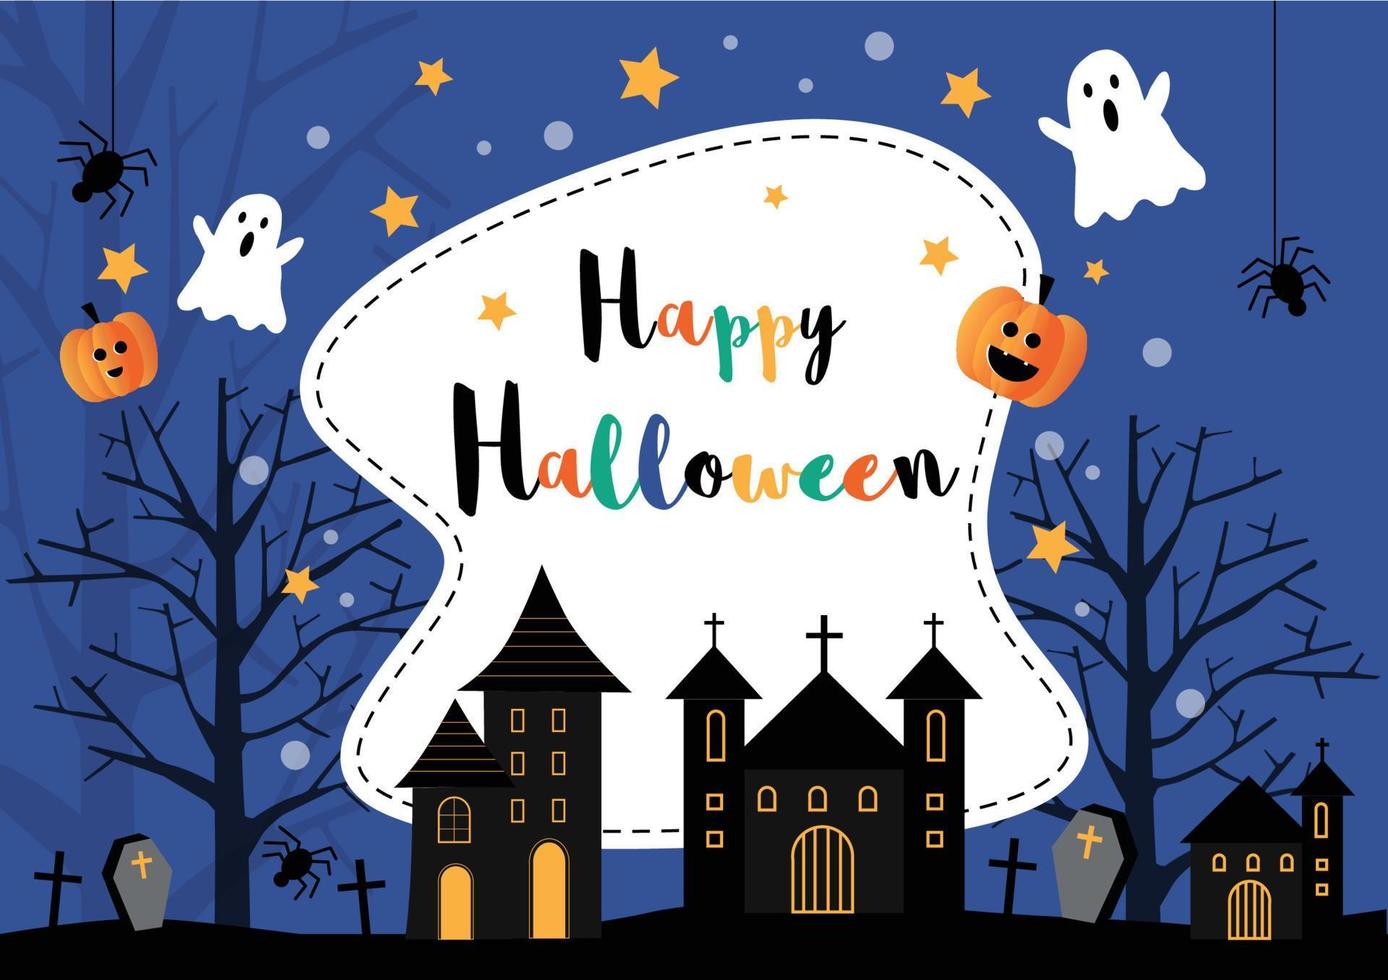 contento Halloween festa manifesto carta con fantasma Casa castello, zucche , fantasma, ragno e tomba a notte sfondo con stella e silhouette morto alberi vettore illustrazione